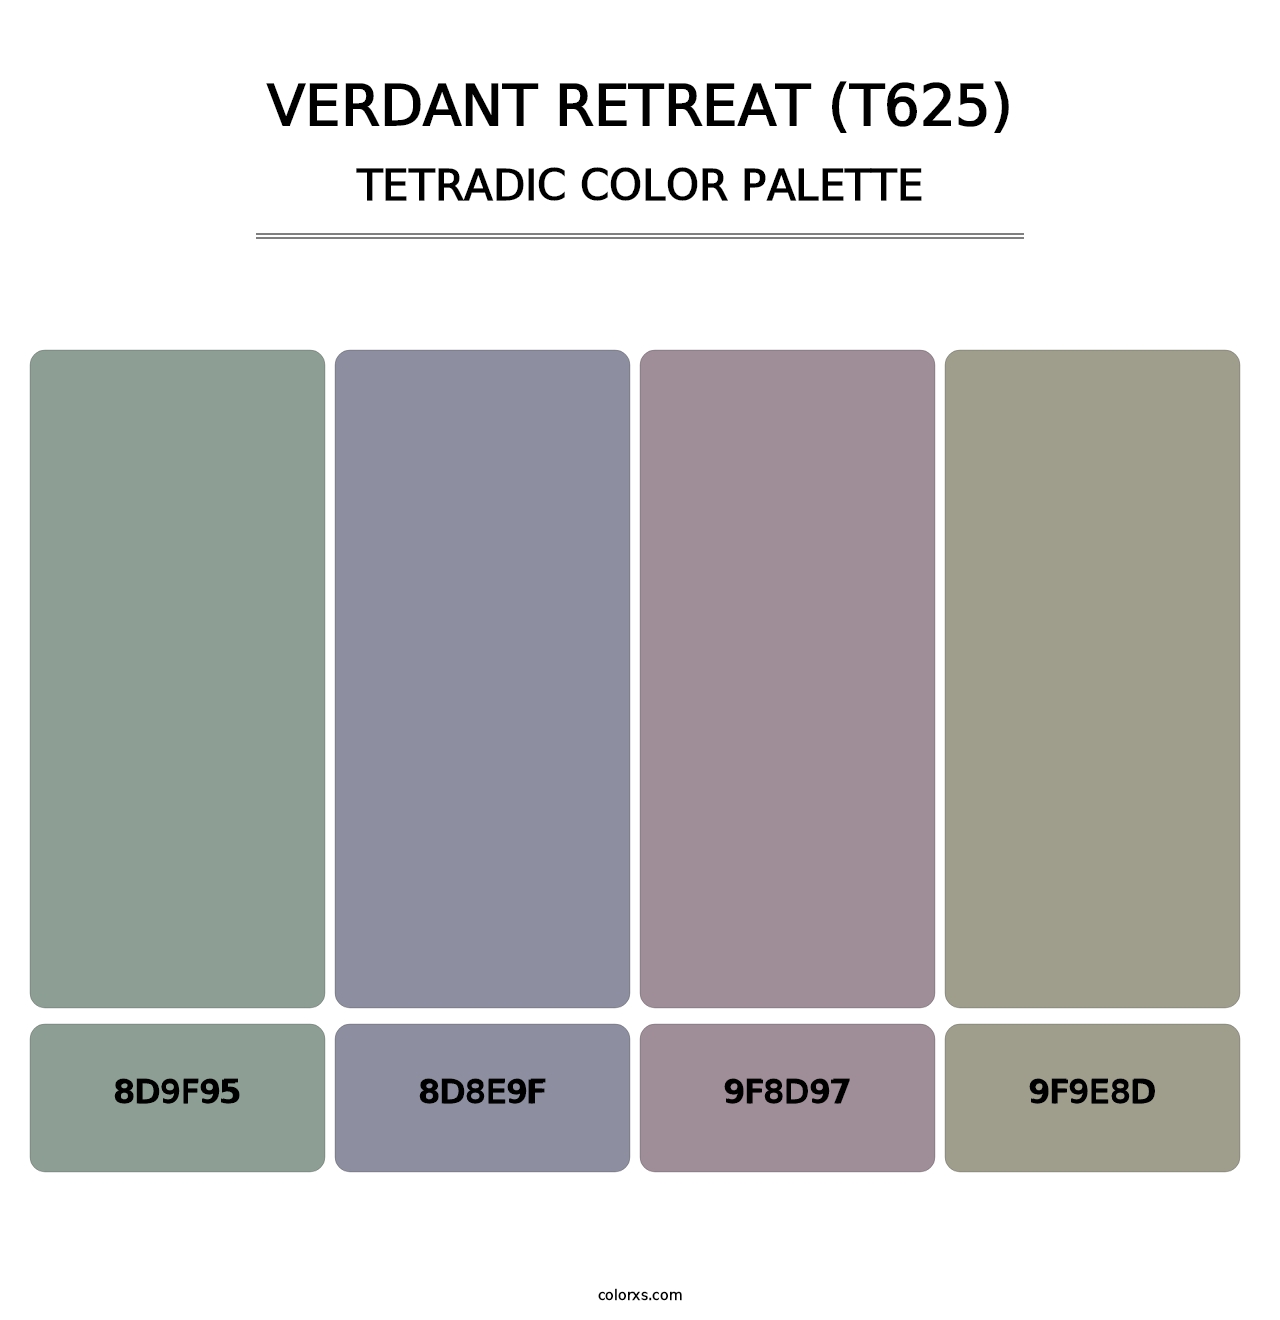 Verdant Retreat (T625) - Tetradic Color Palette